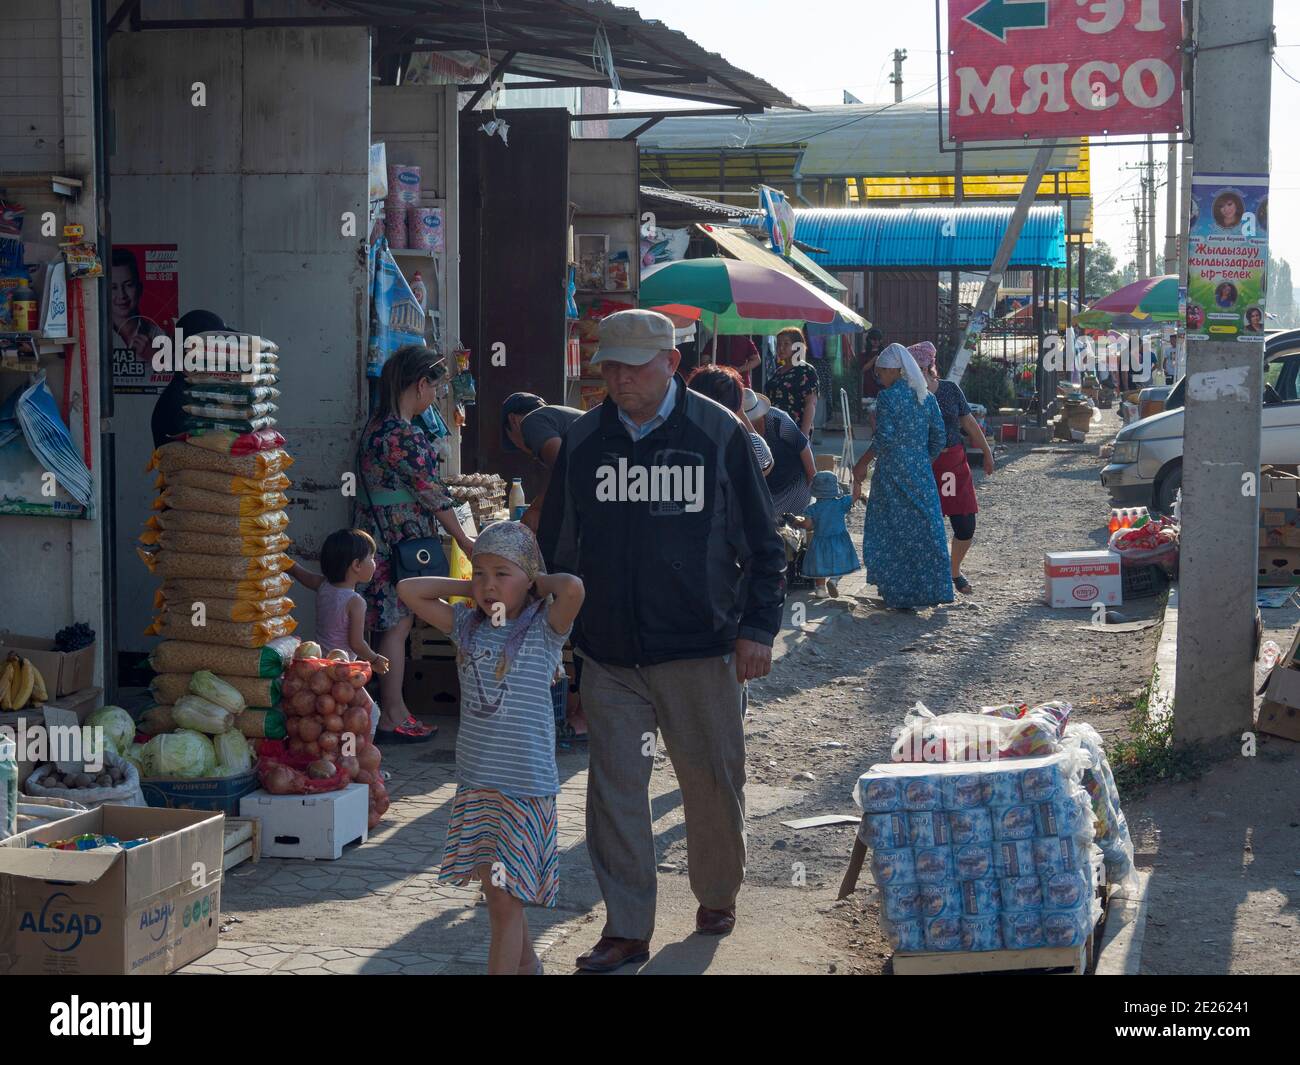 Der traditionelle Markt. Stadt Talas im Tien Shan oder himmlische Berge. Asien, Zentralasien, Kirgisistan Stockfoto